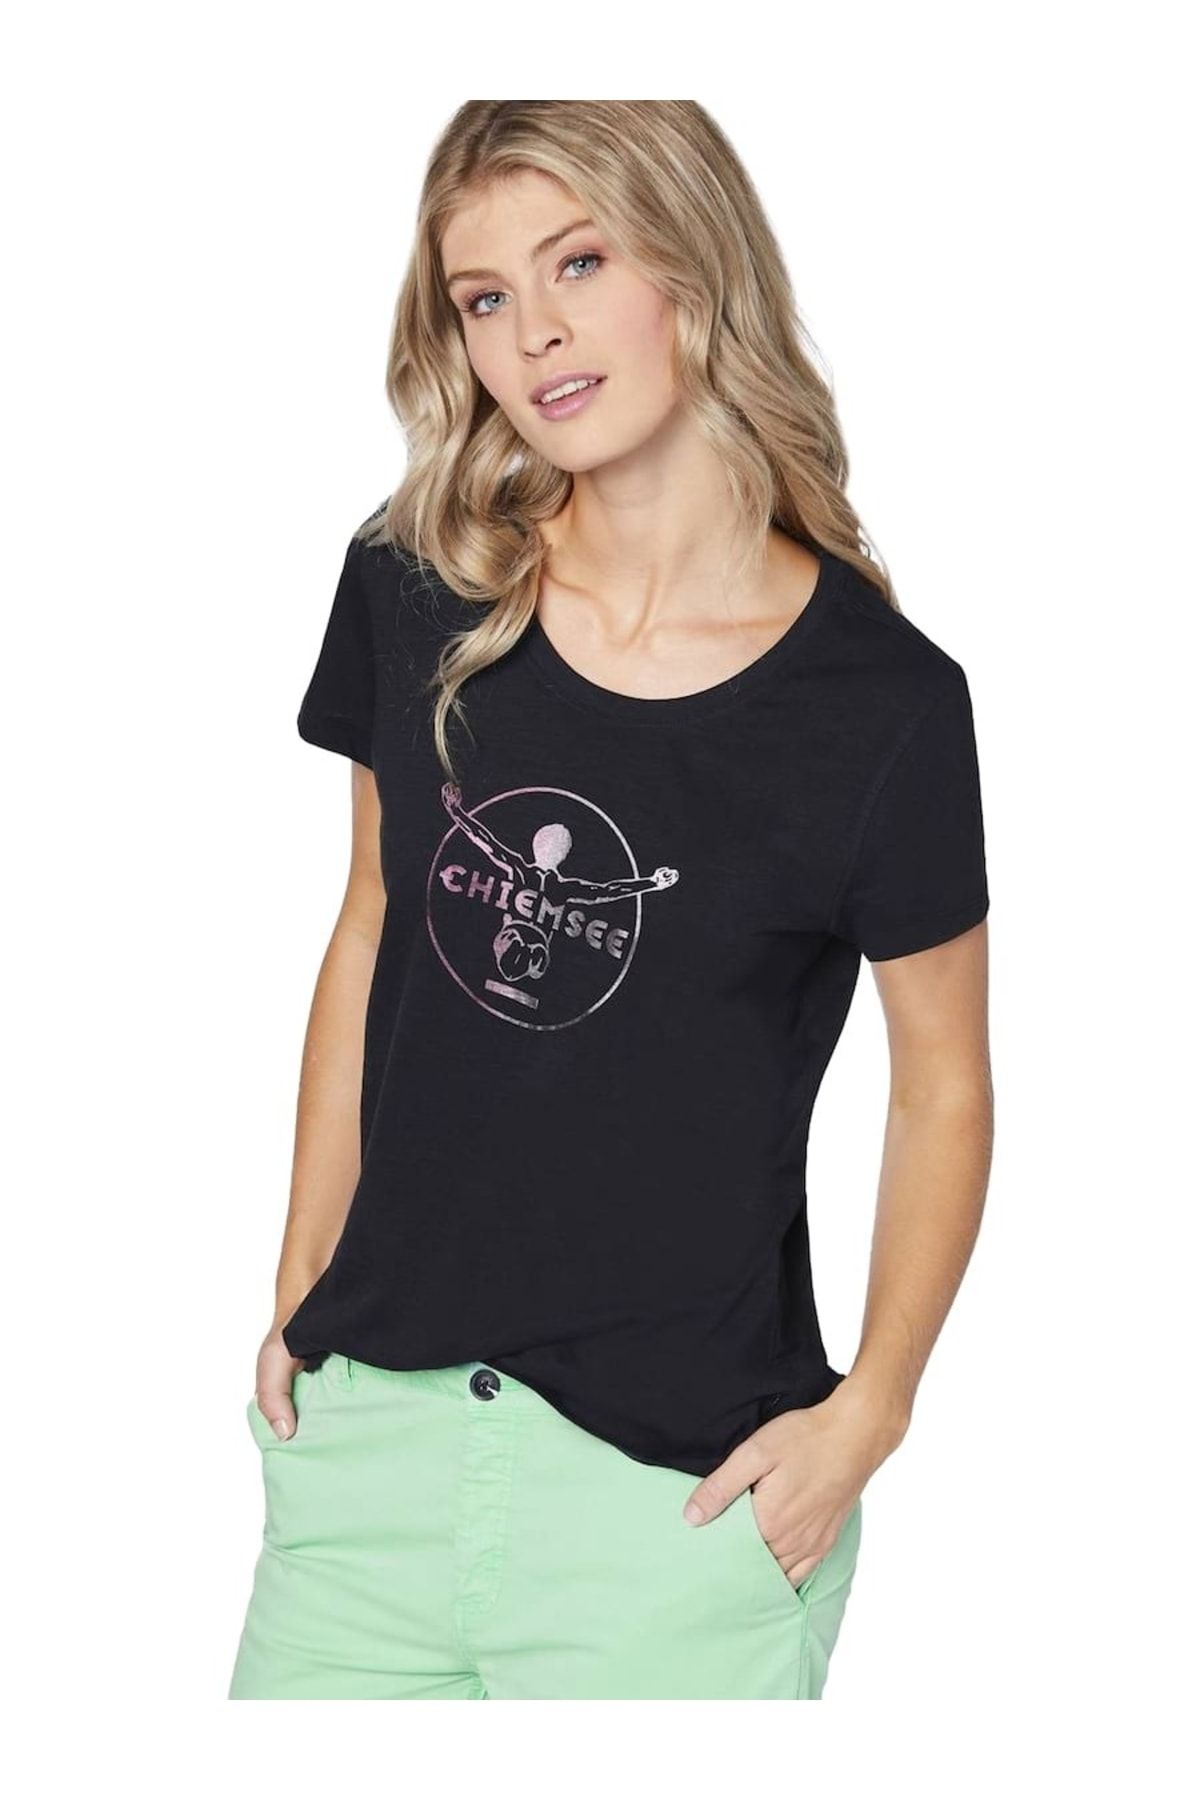 Chiemsee Damen T-Shirt - Taormina, Shirt, Baumwolle, Rundhals, Logo, kurz,  einfarbig - Trendyol | T-Shirts